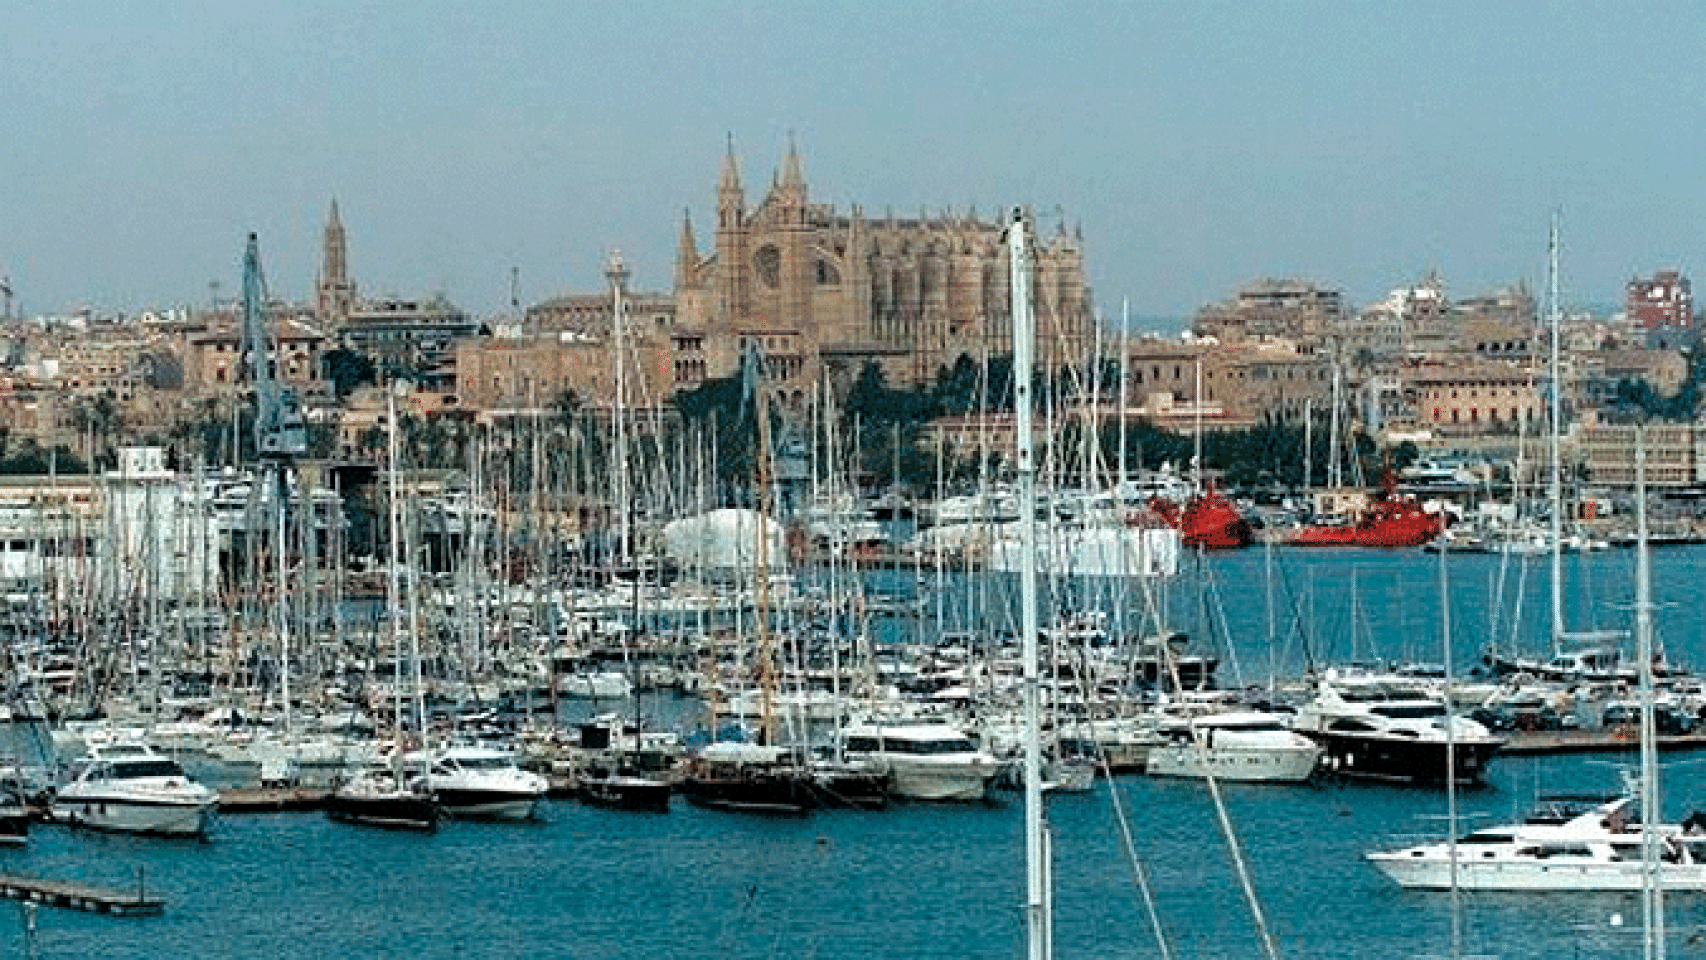 Imagen de archivo del puerto de Palma (Mallorca), donde denuncian el alquiler de barcos ilegal / EFE